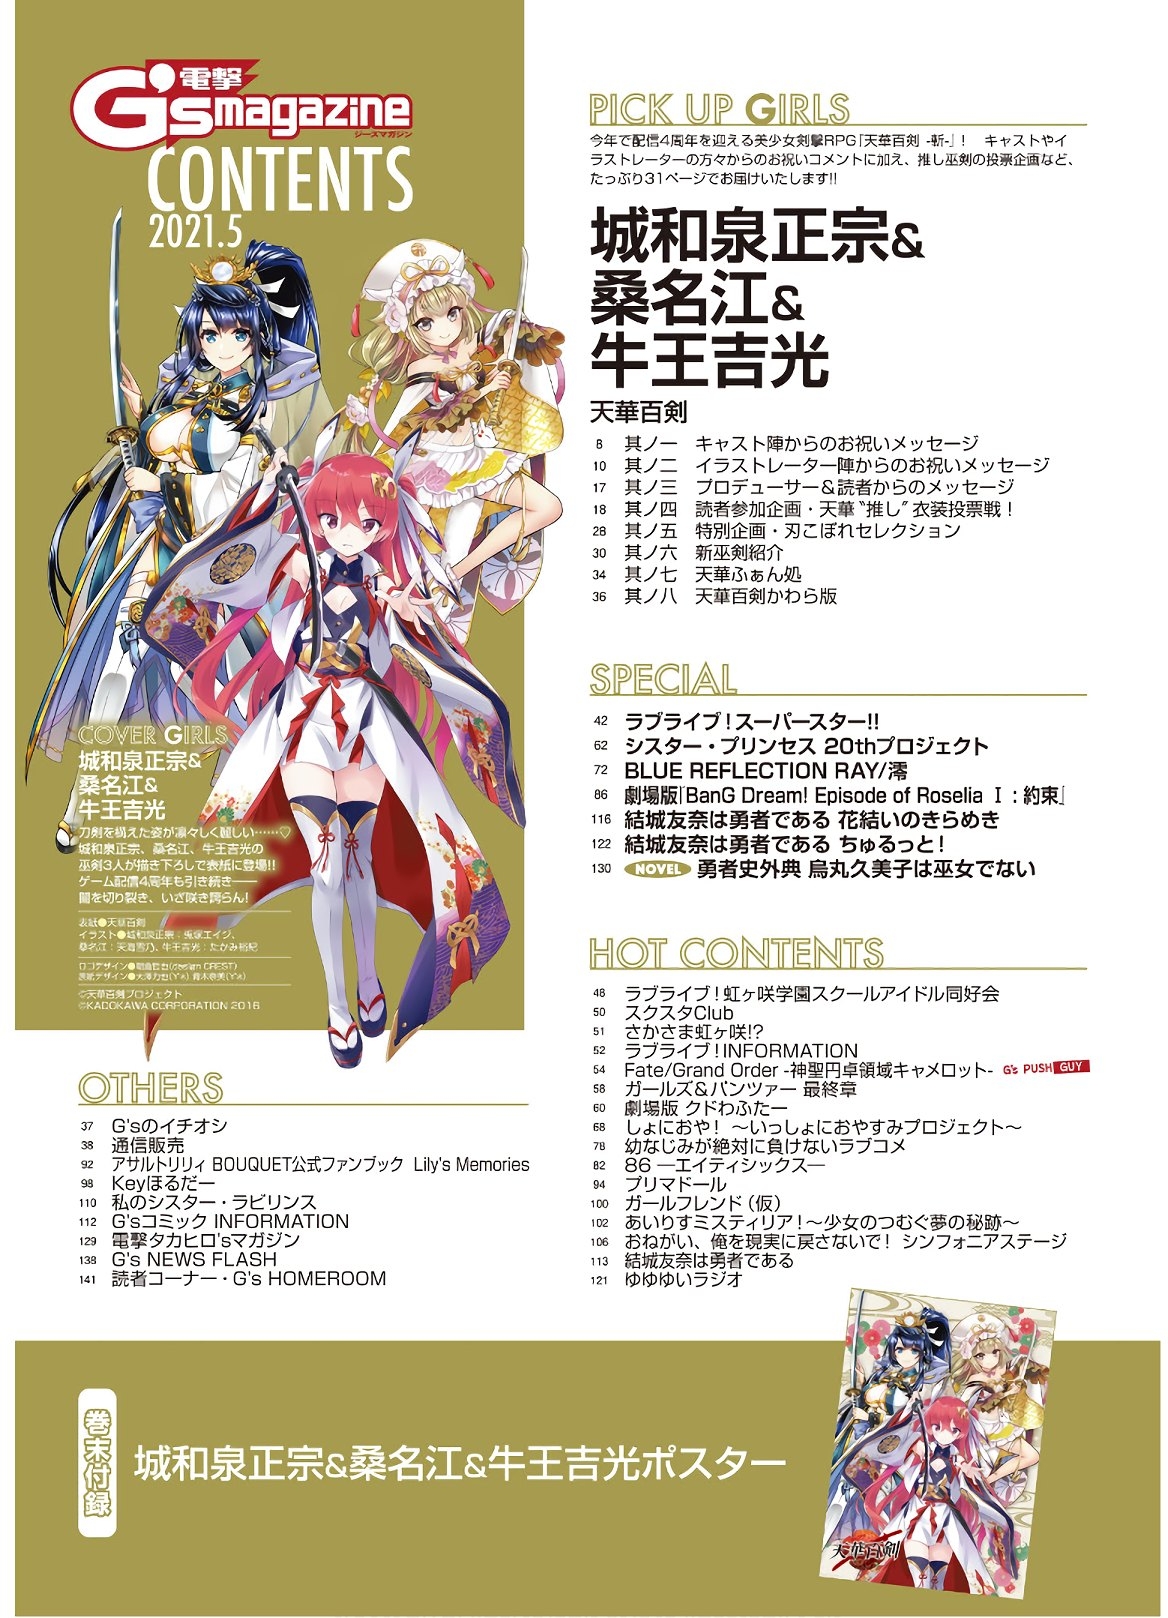 Dengeki G's Magazine #286 - May 2021 2